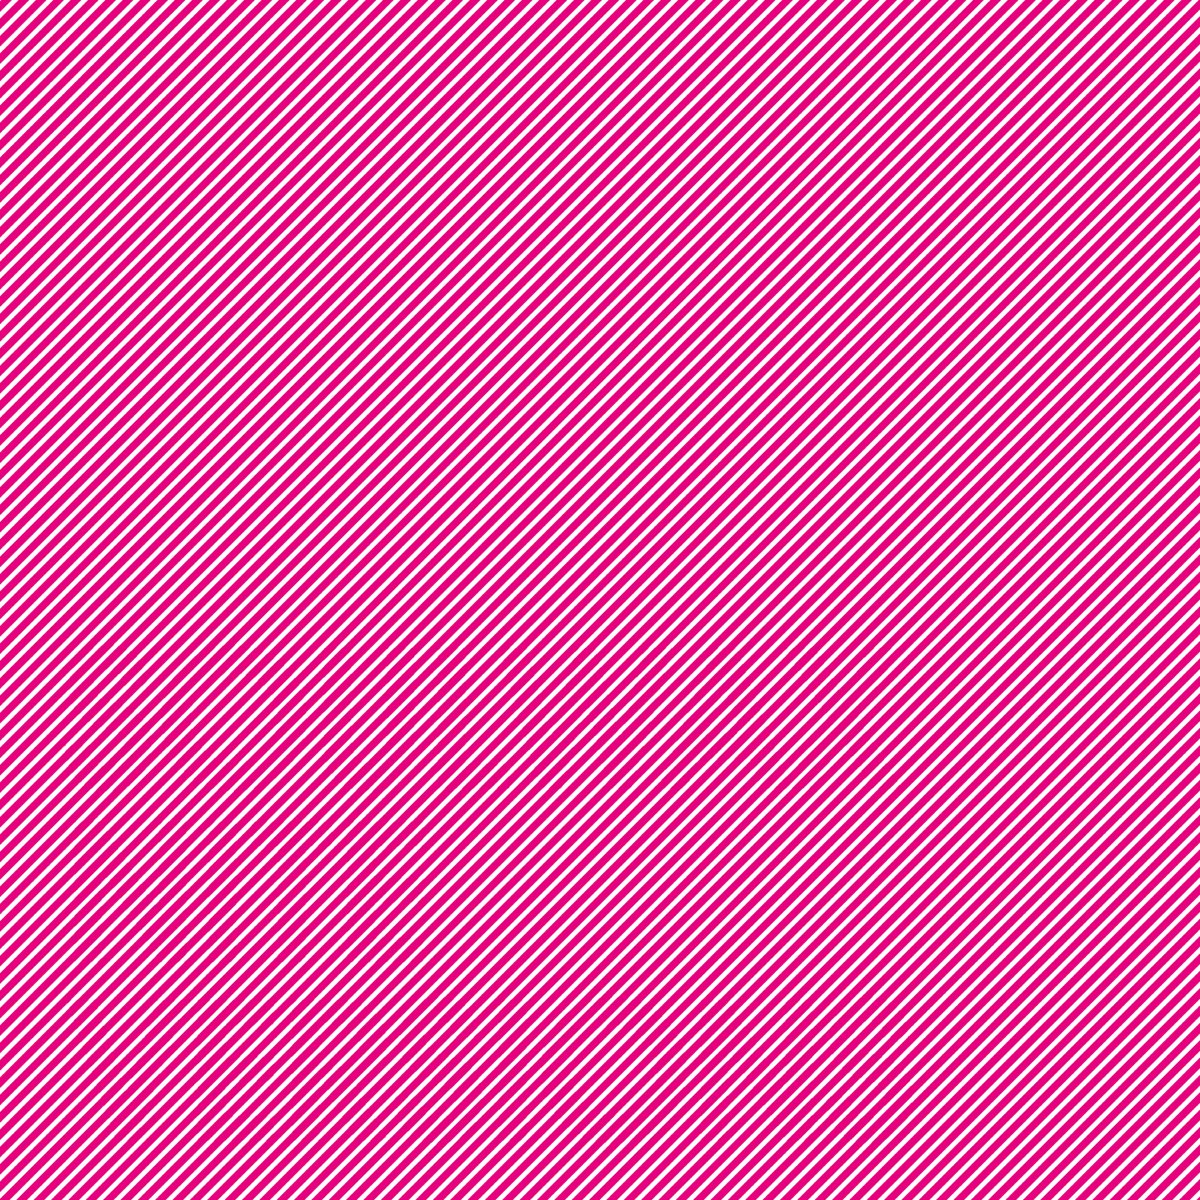 Soulwax: Nite Versions (Vinyl 2xLP)